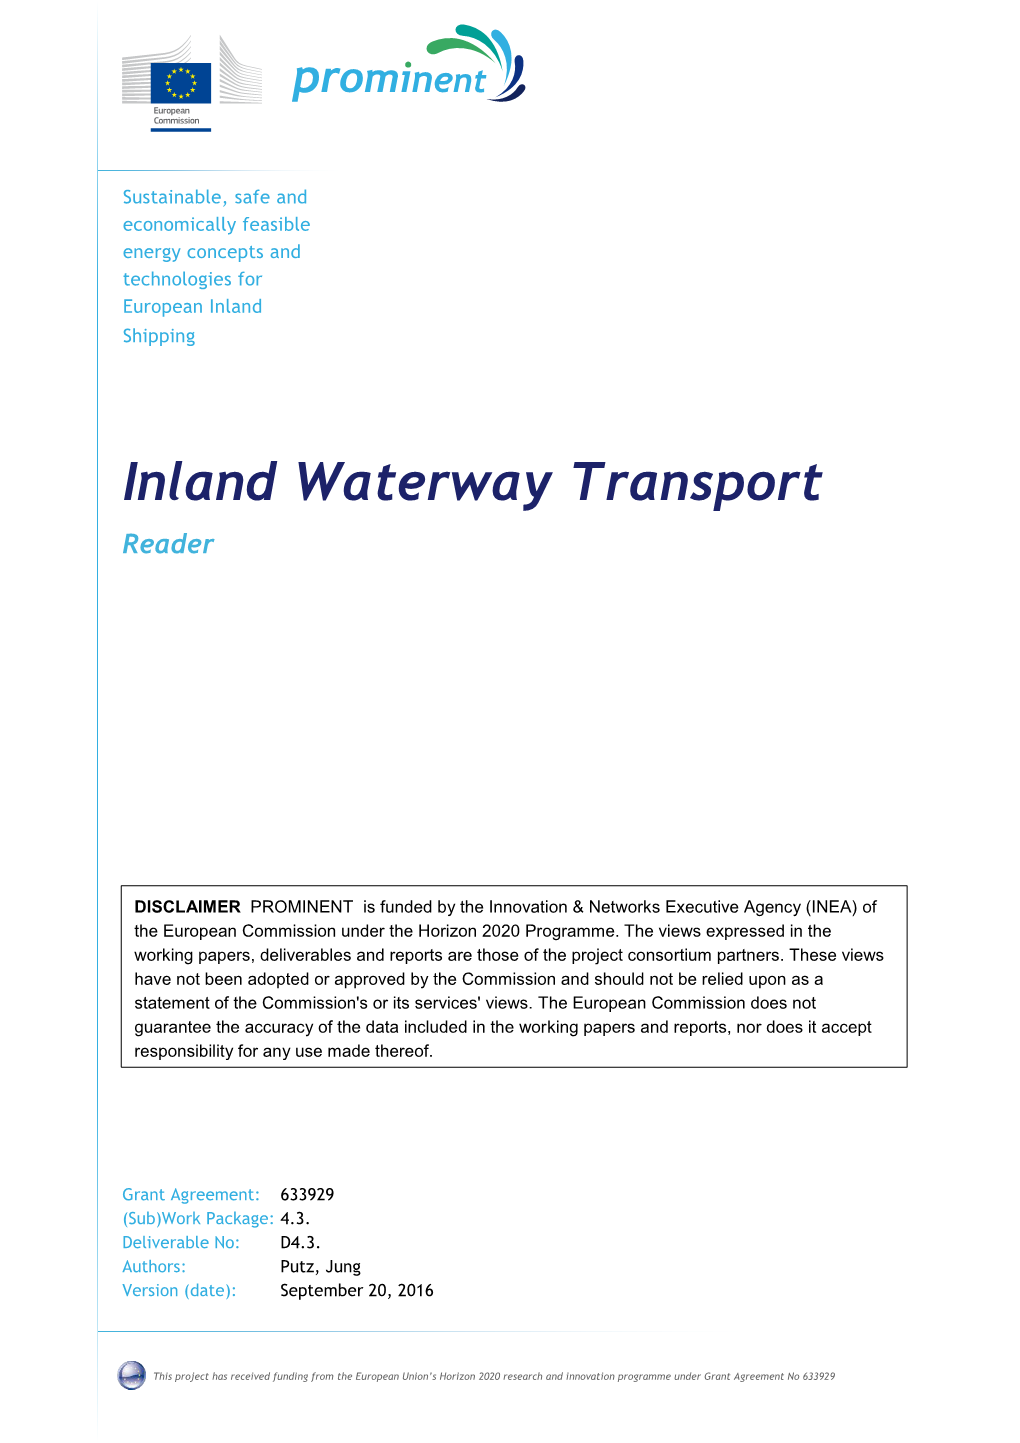 Inland Waterway Transport Reader